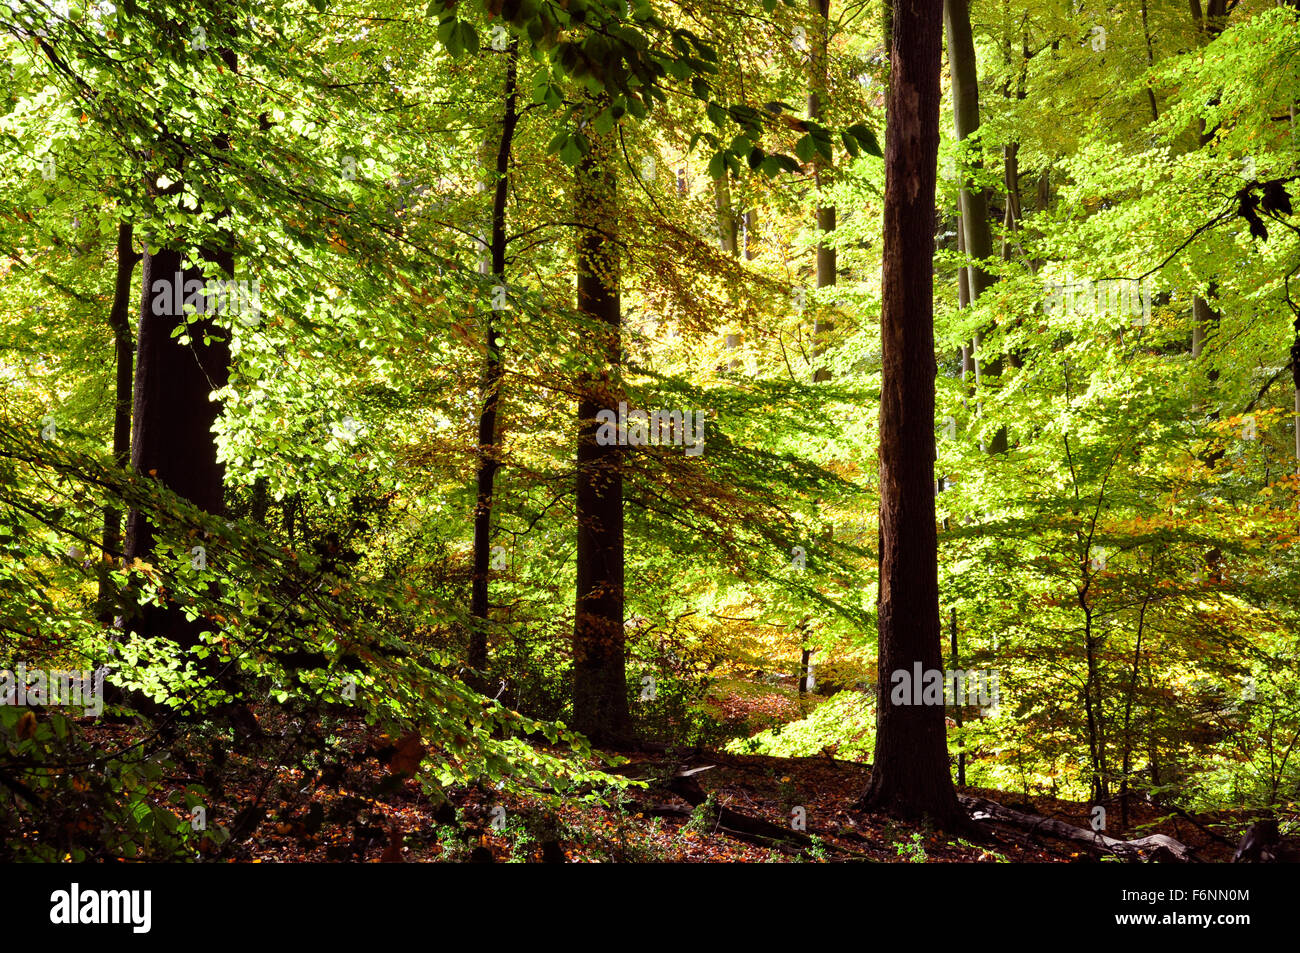 Bucks Chiltern Hills - Profondo nel bosco di faggi, russet brown green colori autunnali - tappeto di foglie - ombre - albero luce solare Foto Stock